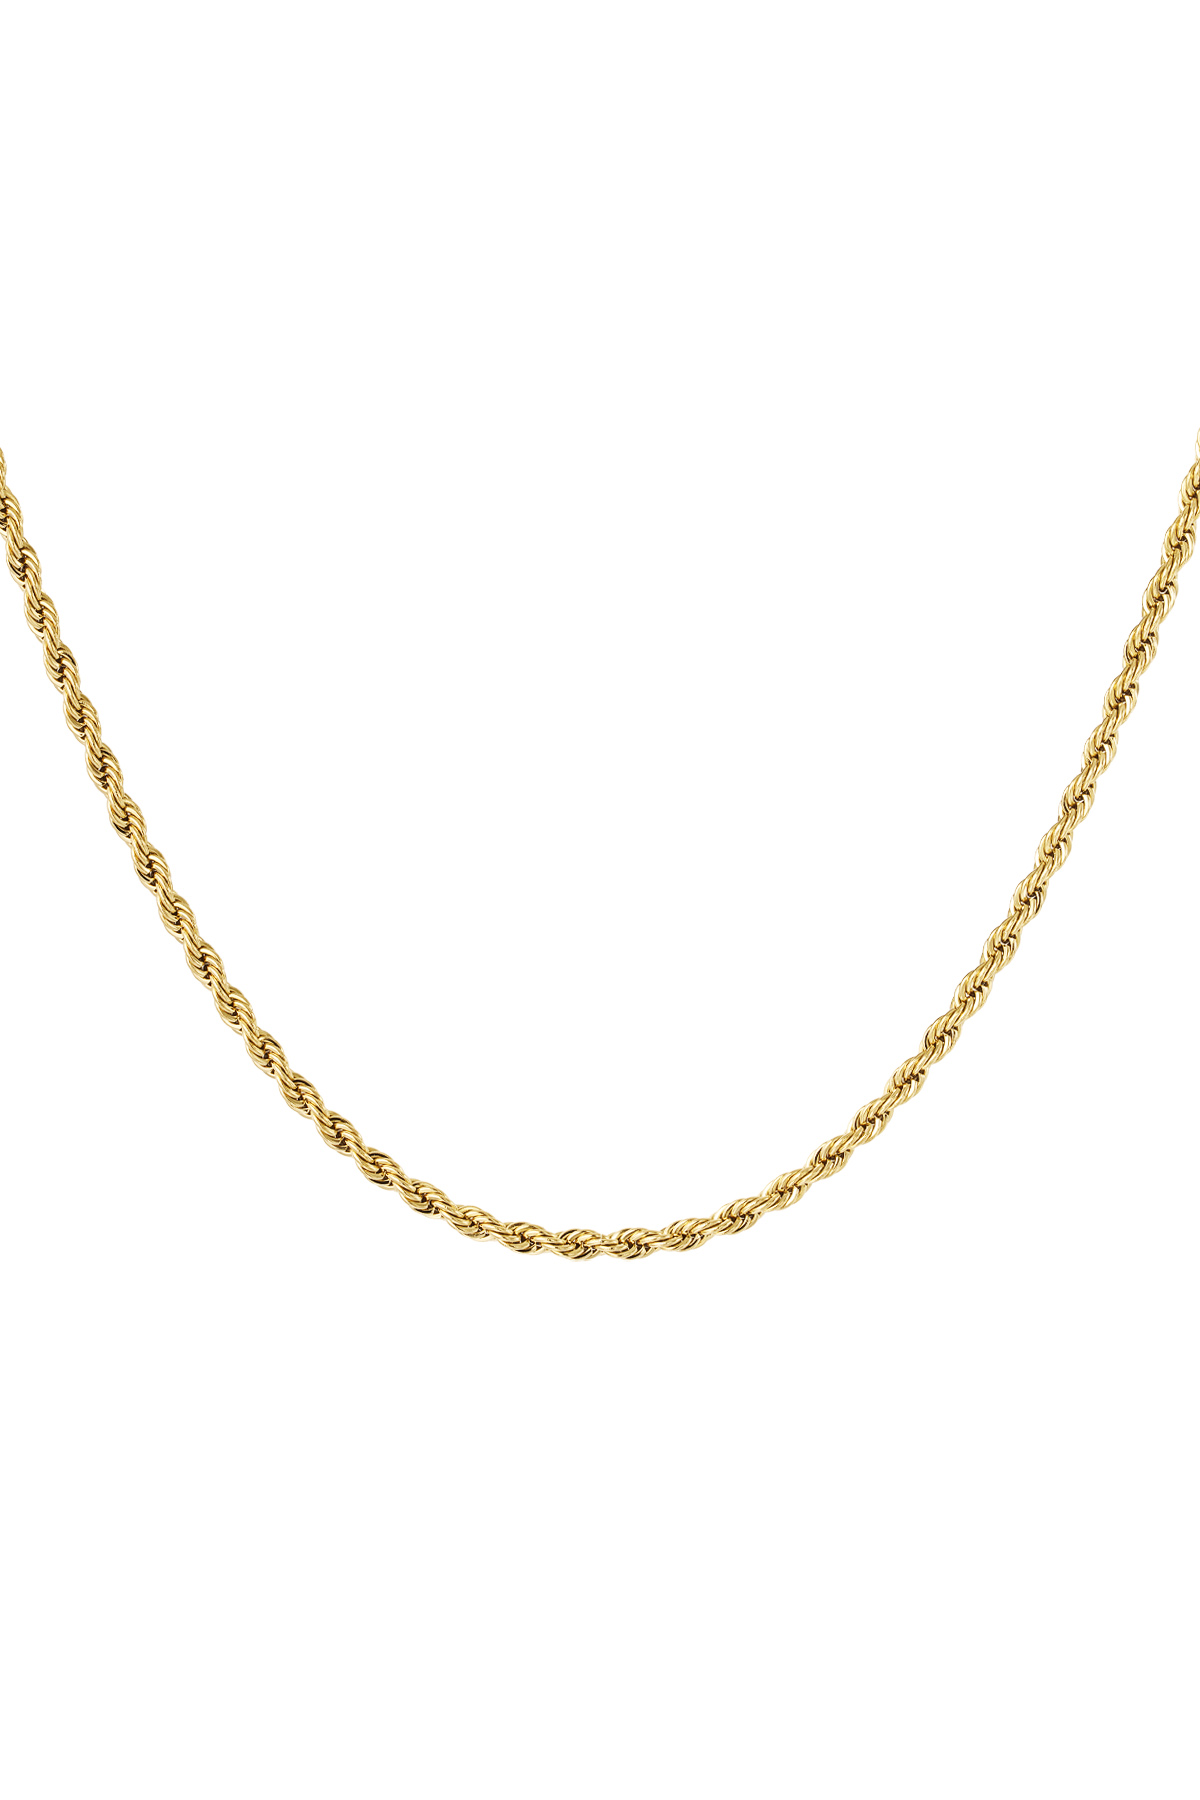 Unisex Halskette gedreht 50cm - Gold - 4,0MM 